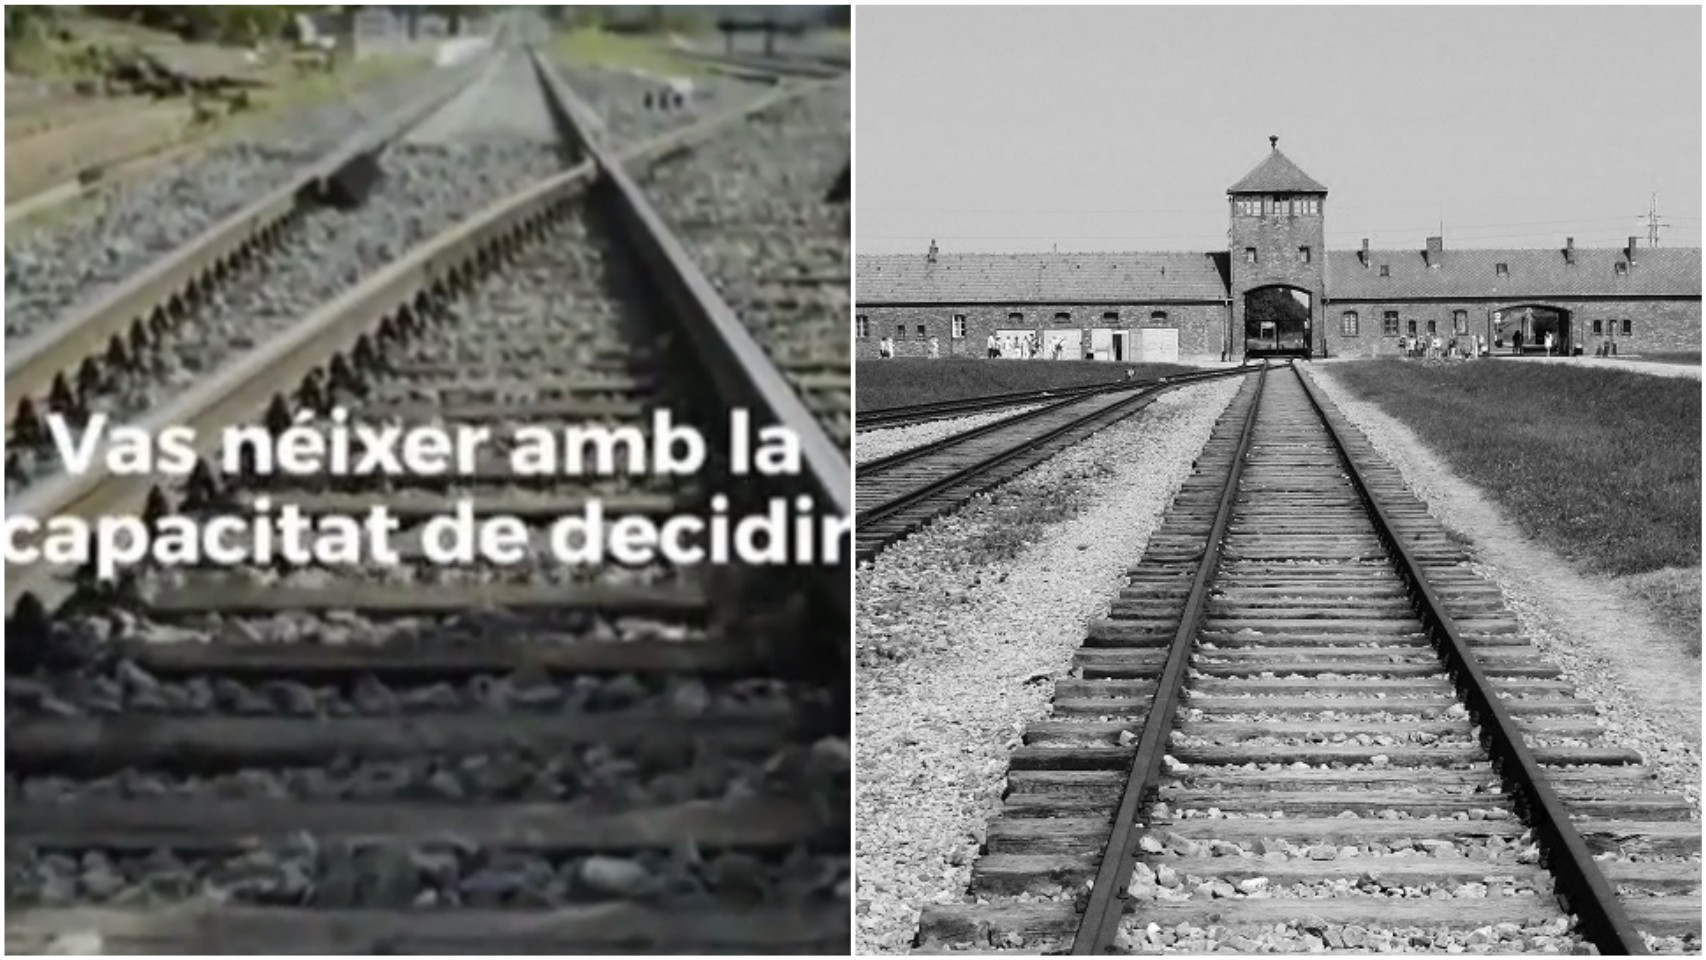 Fotograma del anuncio del referéndum ilegal en TV3  y entrada a Auschwitz por las también vías del tren